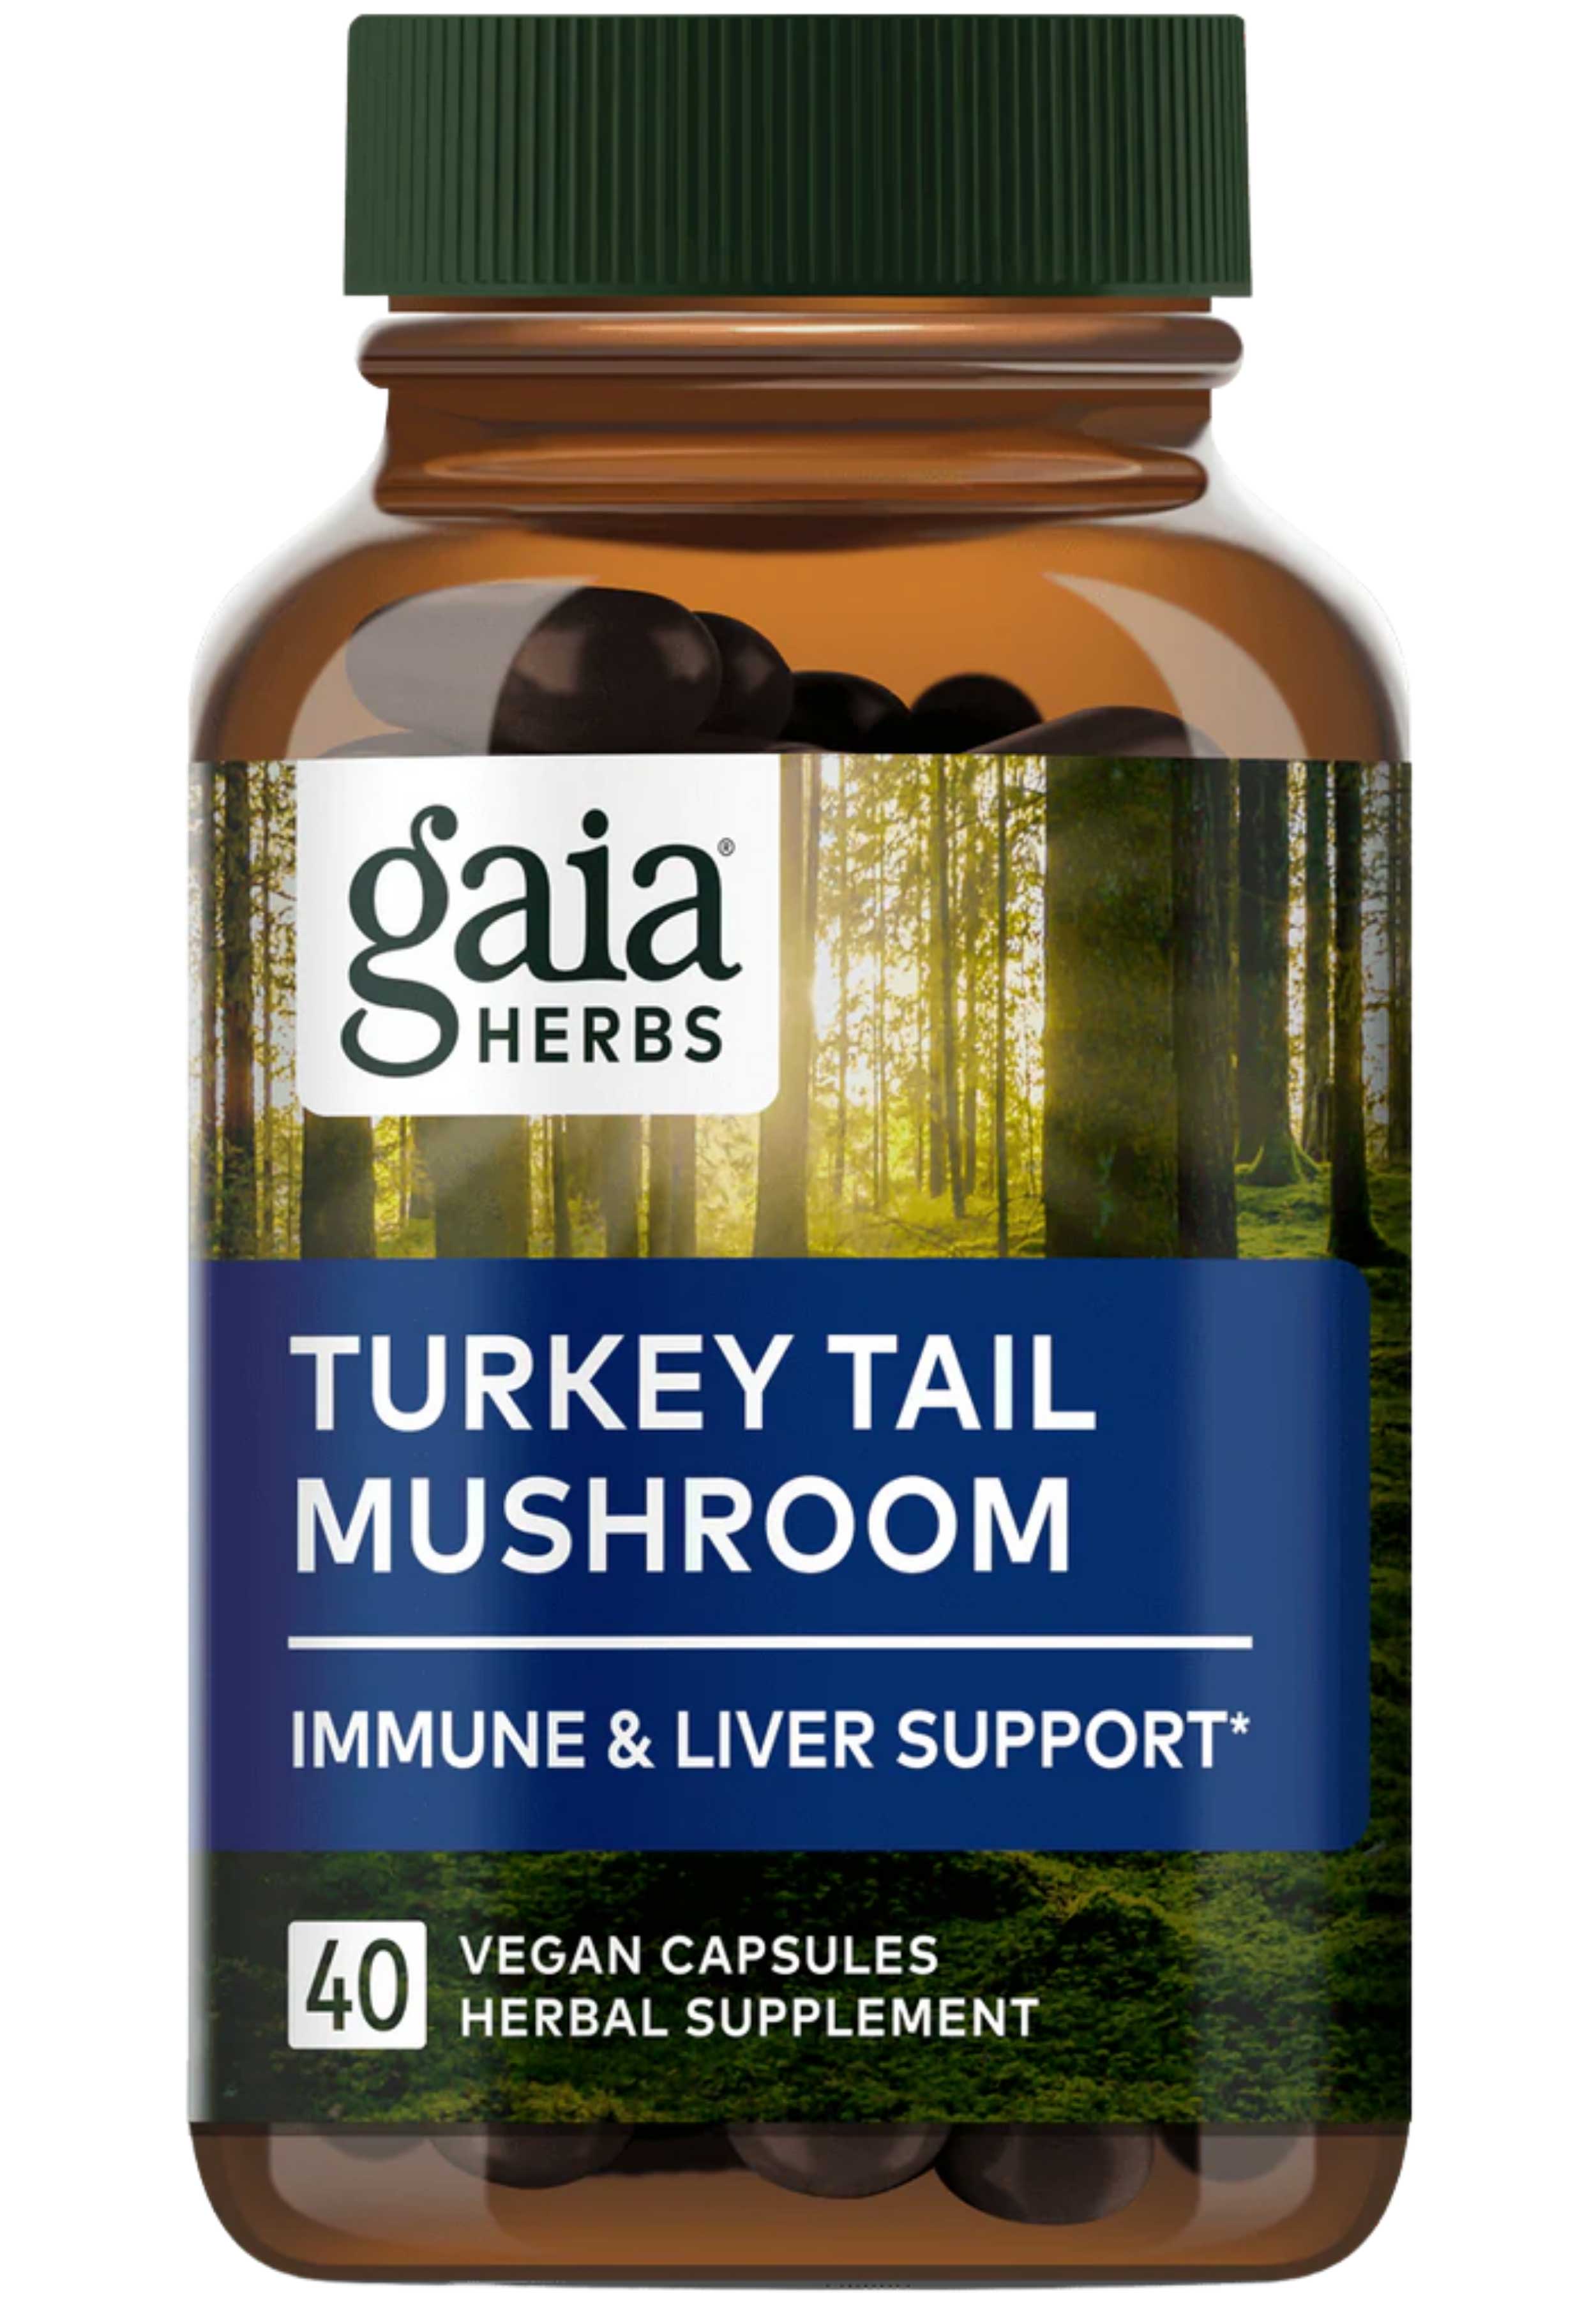 Gaia Herbs Turkey Tail Mushroom